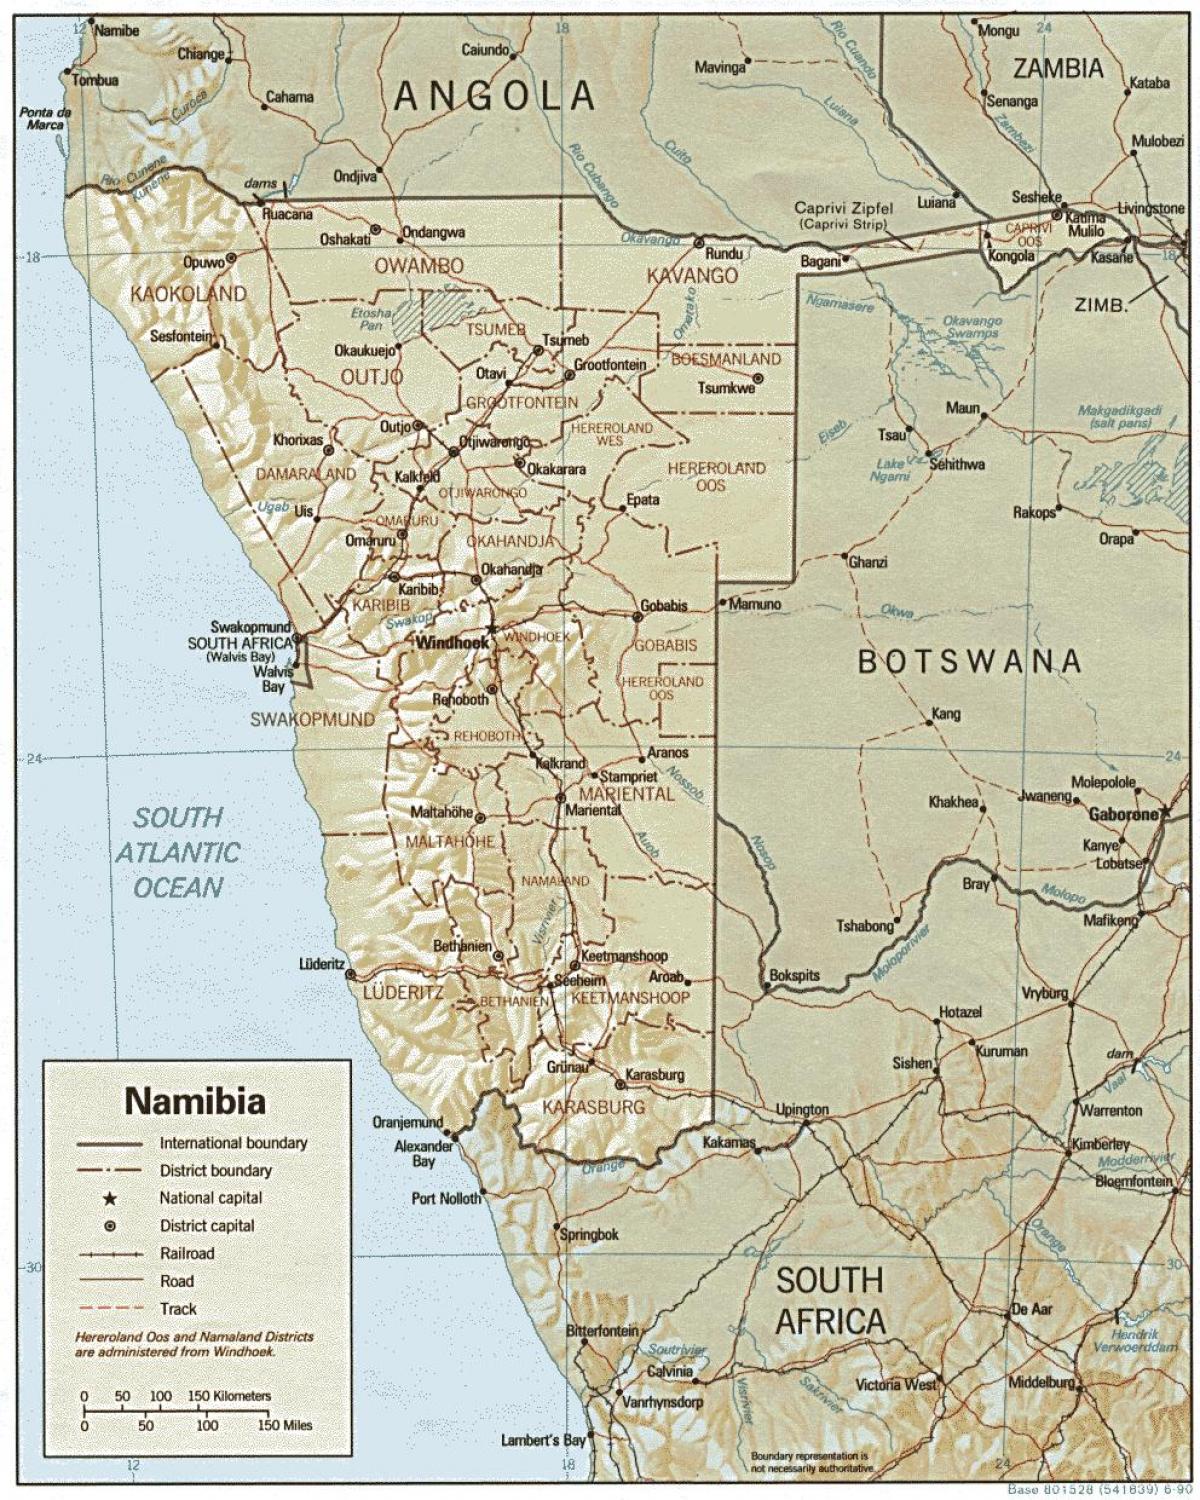 नक्शा नामीबिया के खेत